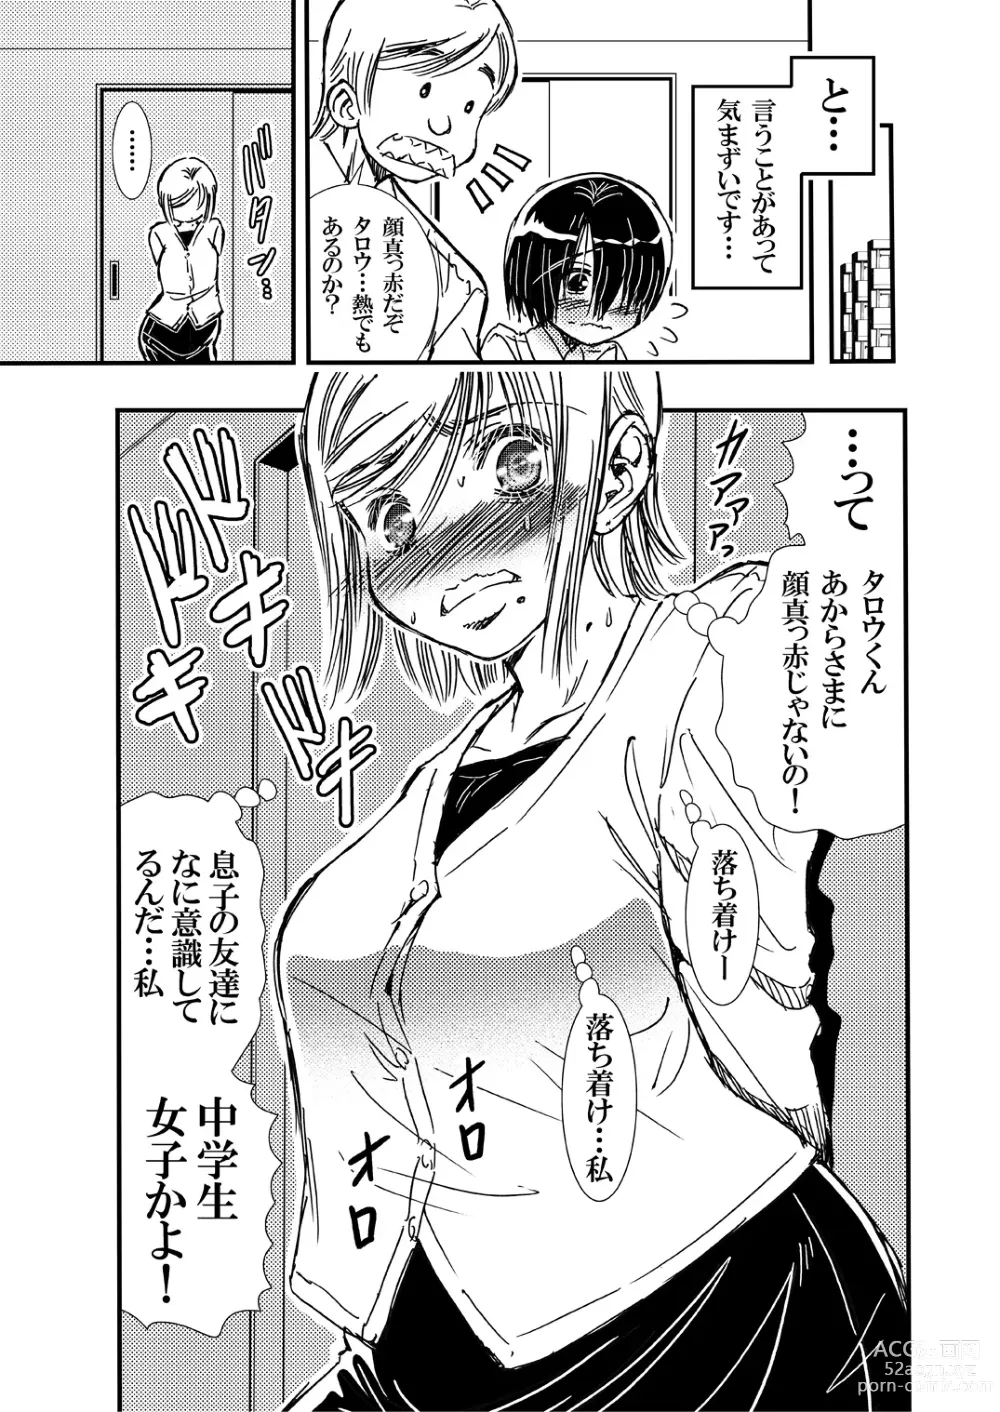 Page 25 of doujinshi Tomodachi Haha to Yatteshimatte Kimazui